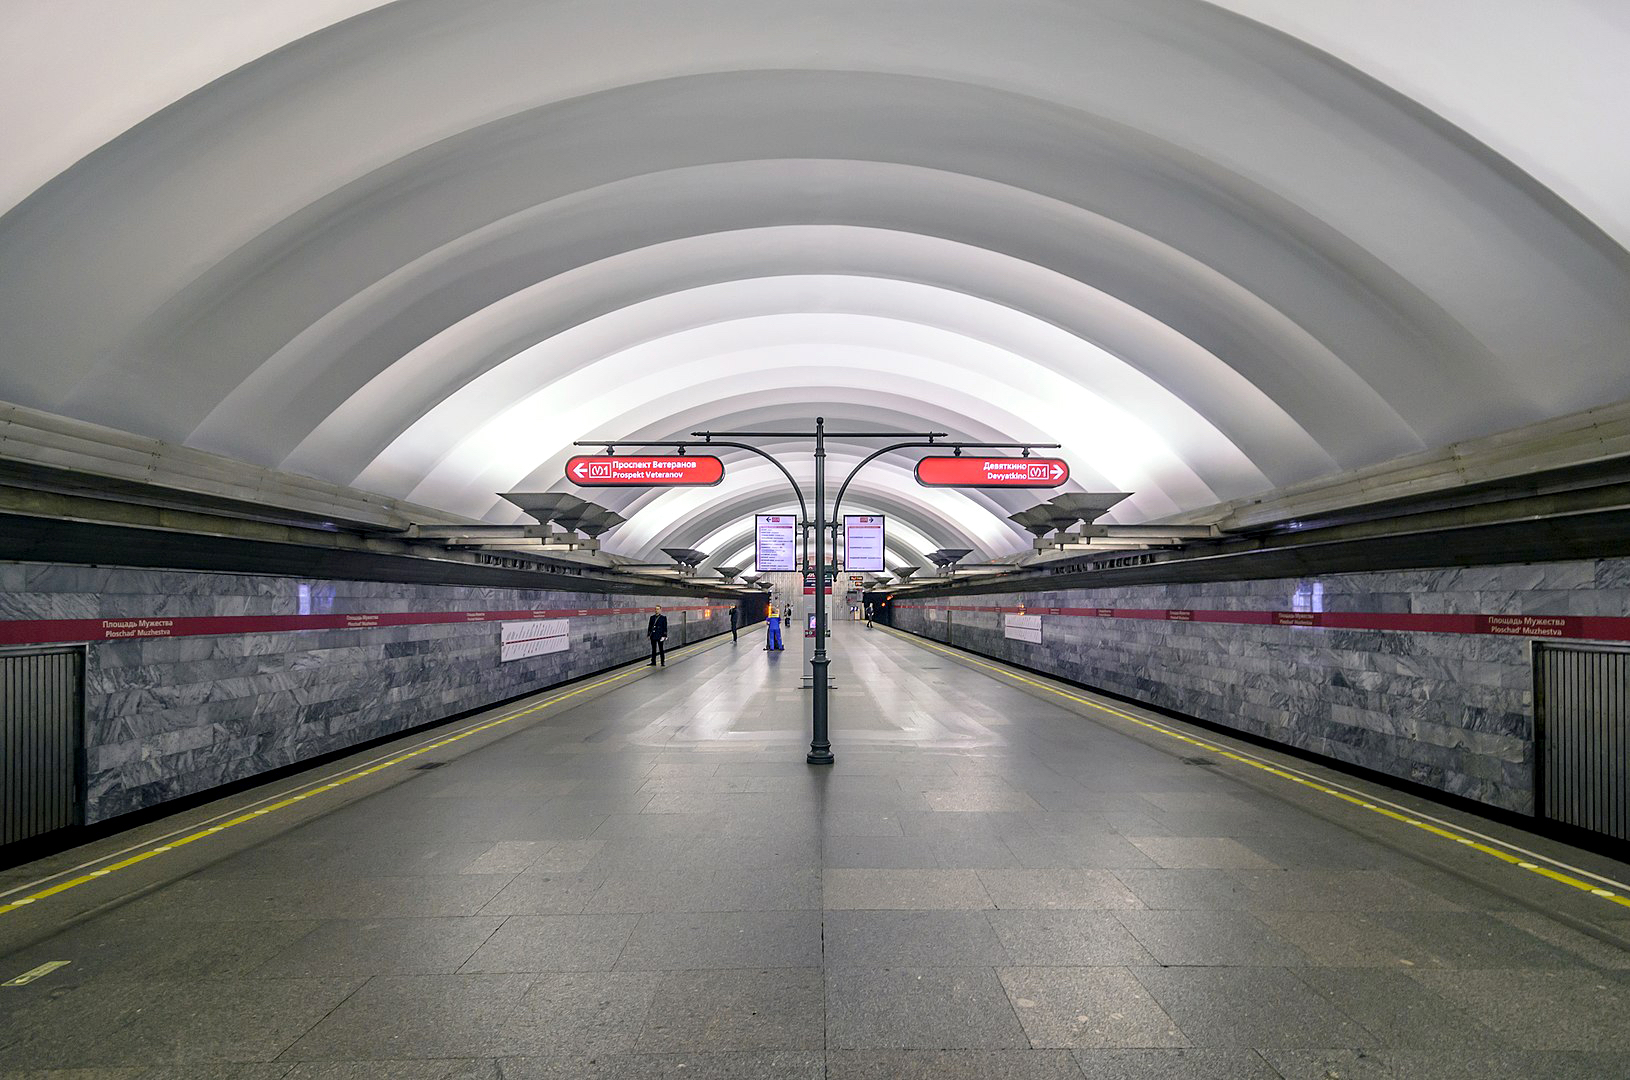 Реферат: Подземные дворцы (Петербургское метро)